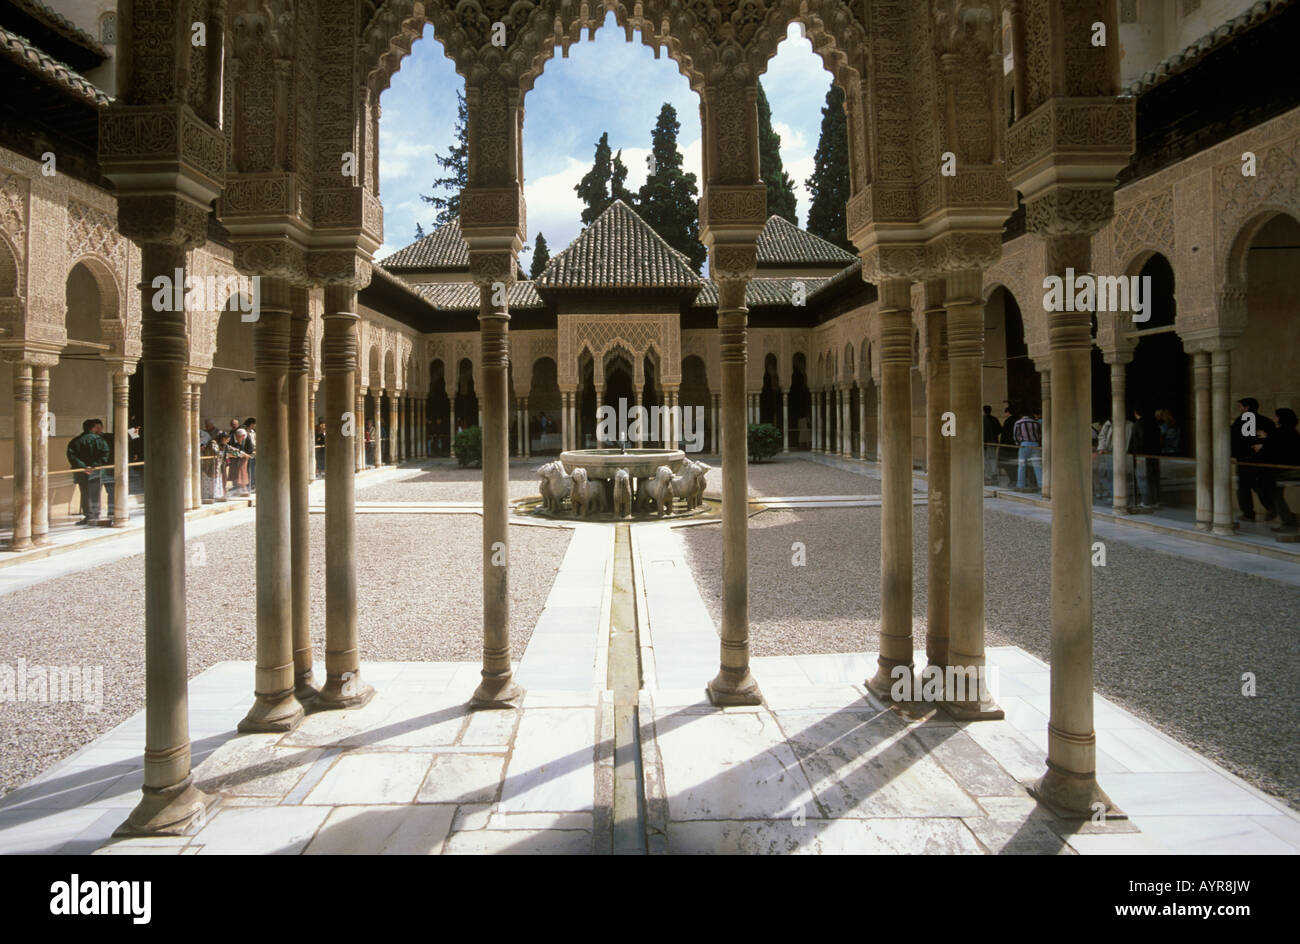 Gericht der Löwen, Nasriden Palast, Alhambra, Granada, Andalusien, Spanien Stockfoto